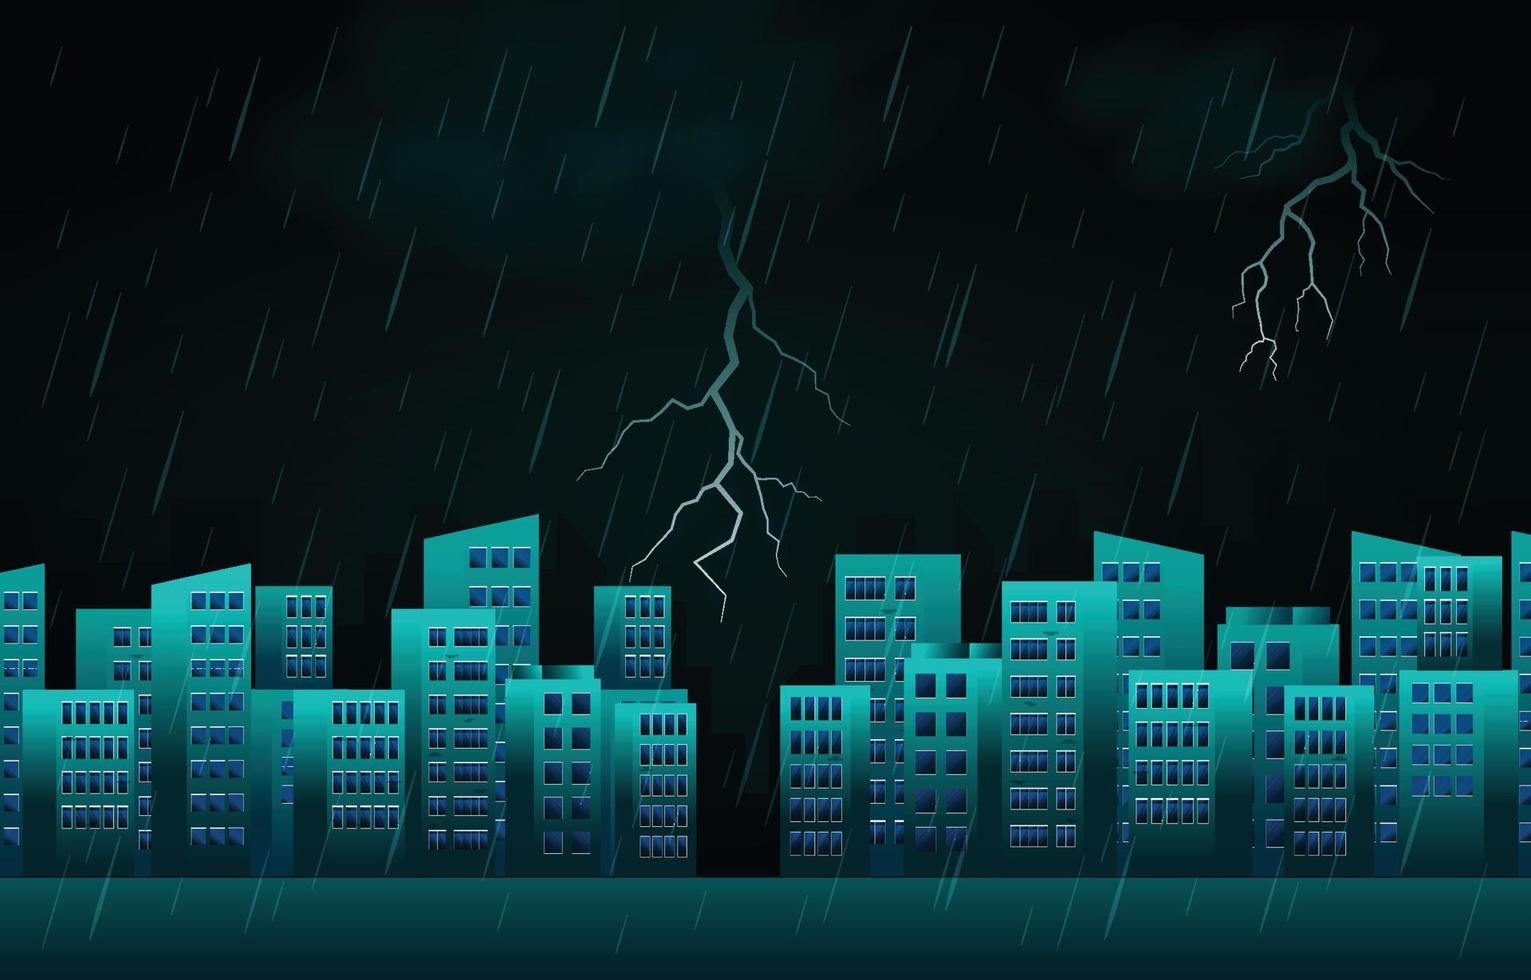 gewitter blitz regnerische nacht stadt gebäude skyline stadtbild illustration vektor